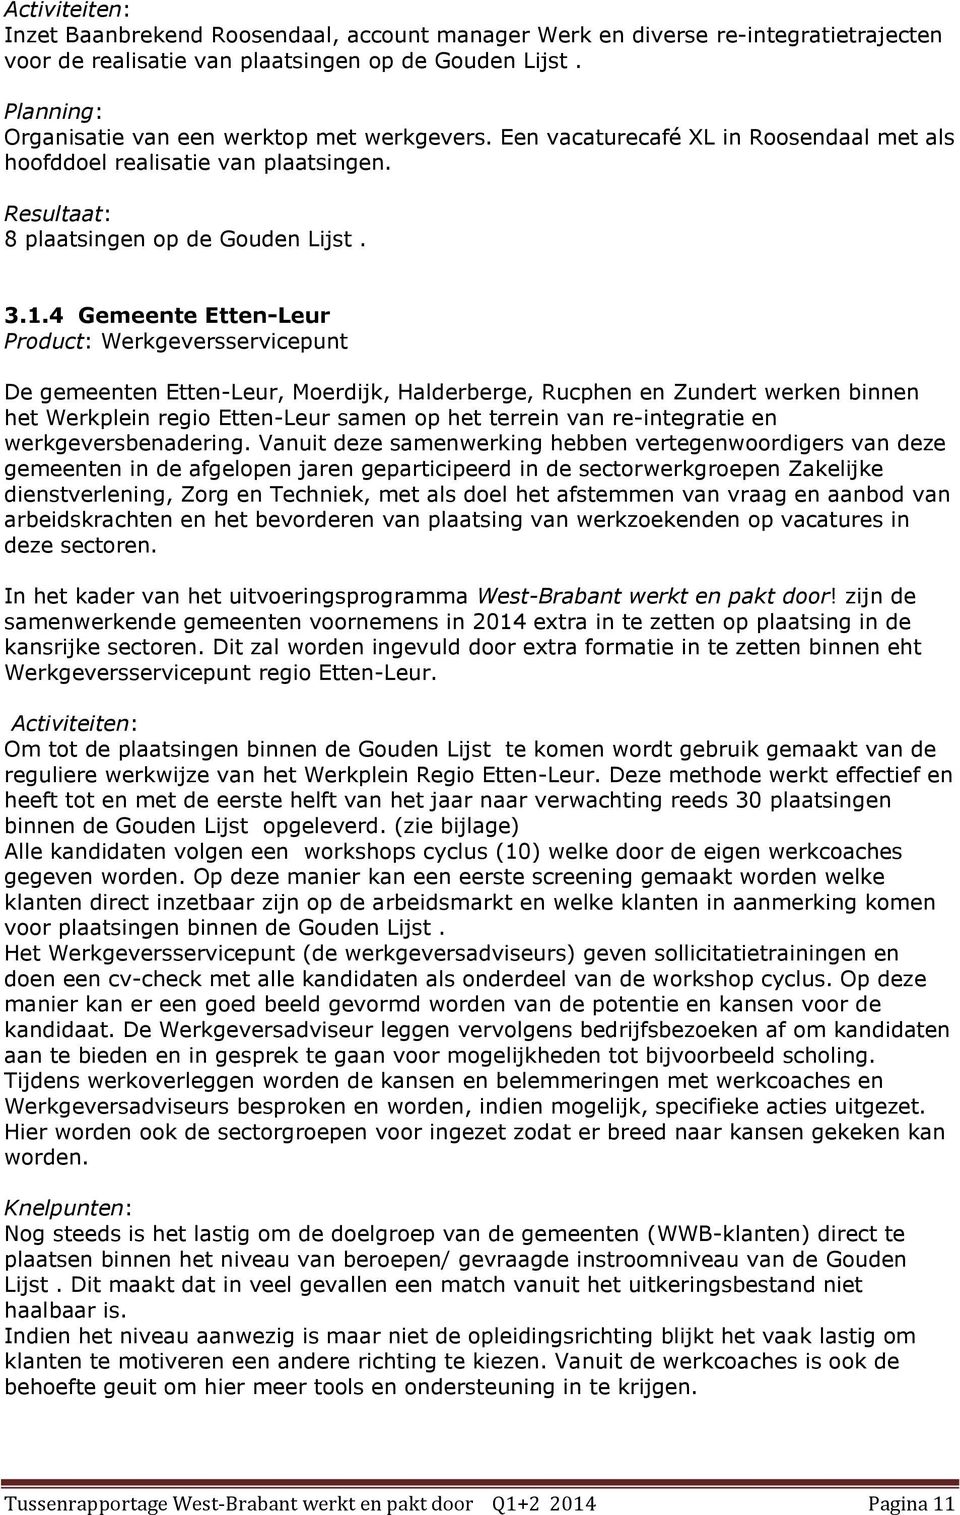 4 Gemeente Etten-Leur Product: Werkgeversservicepunt De gemeenten Etten-Leur, Moerdijk, Halderberge, Rucphen en Zundert werken binnen het Werkplein regio Etten-Leur samen op het terrein van